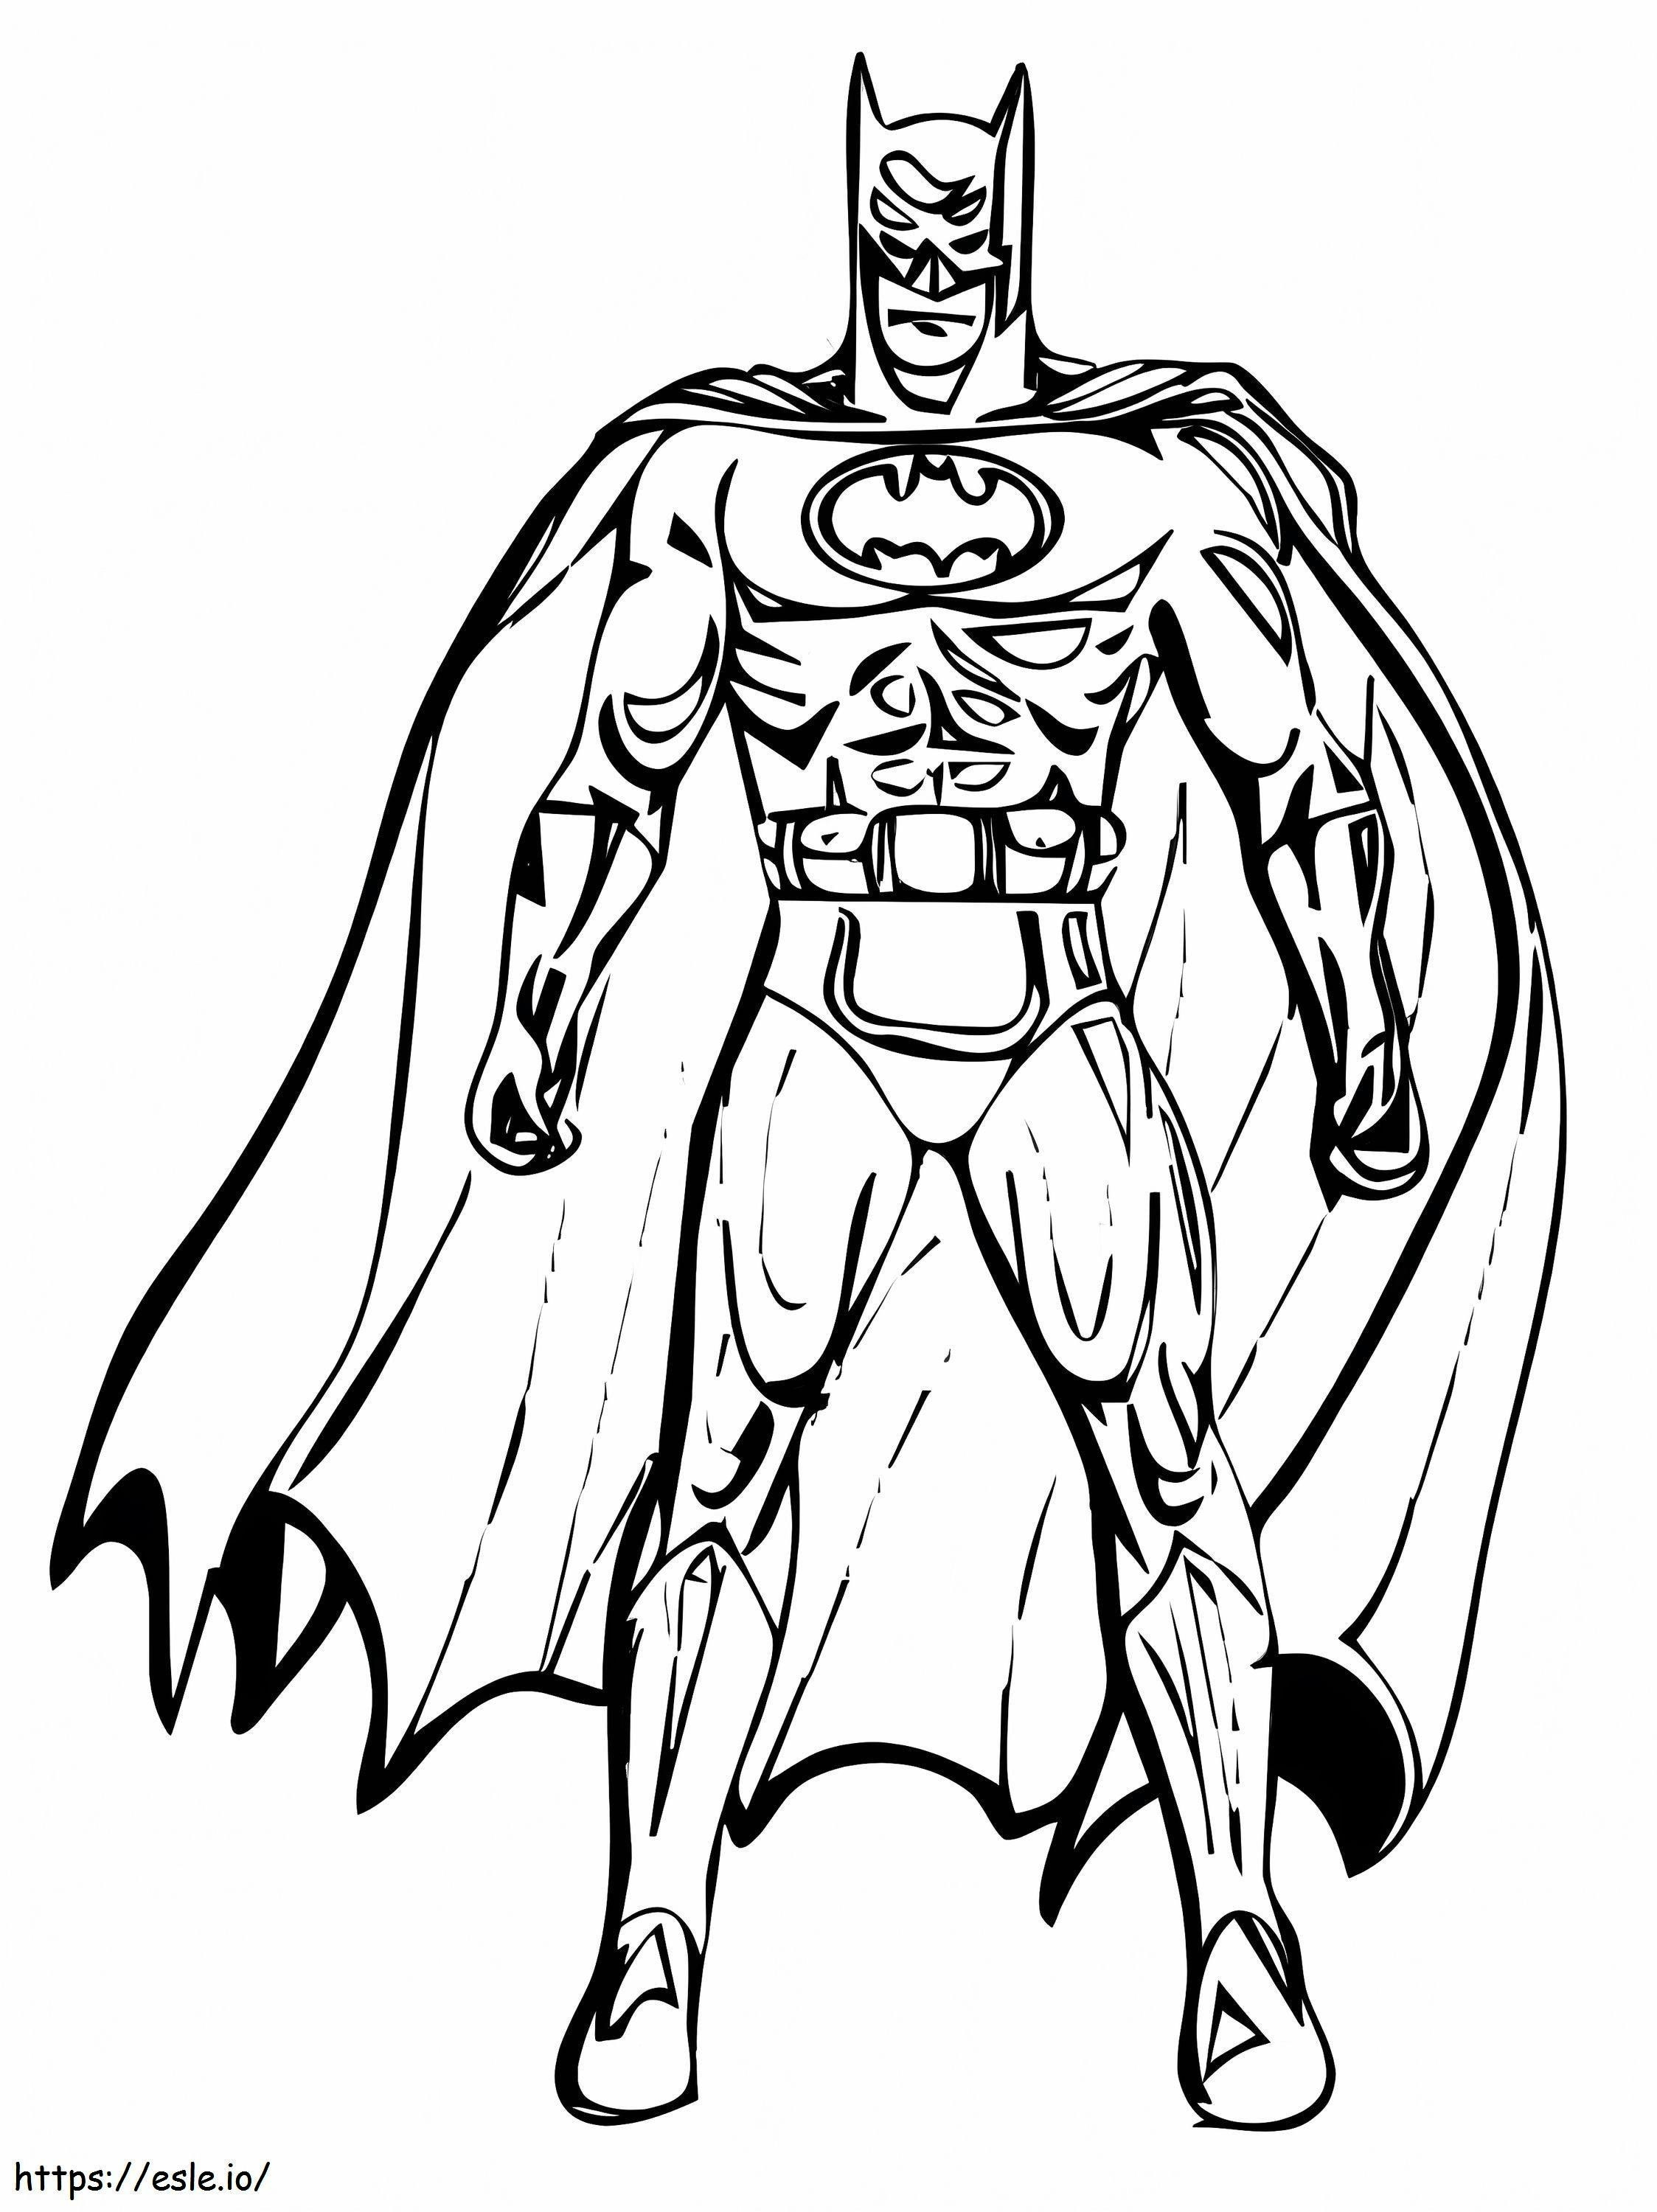 Batman Drawing coloring page